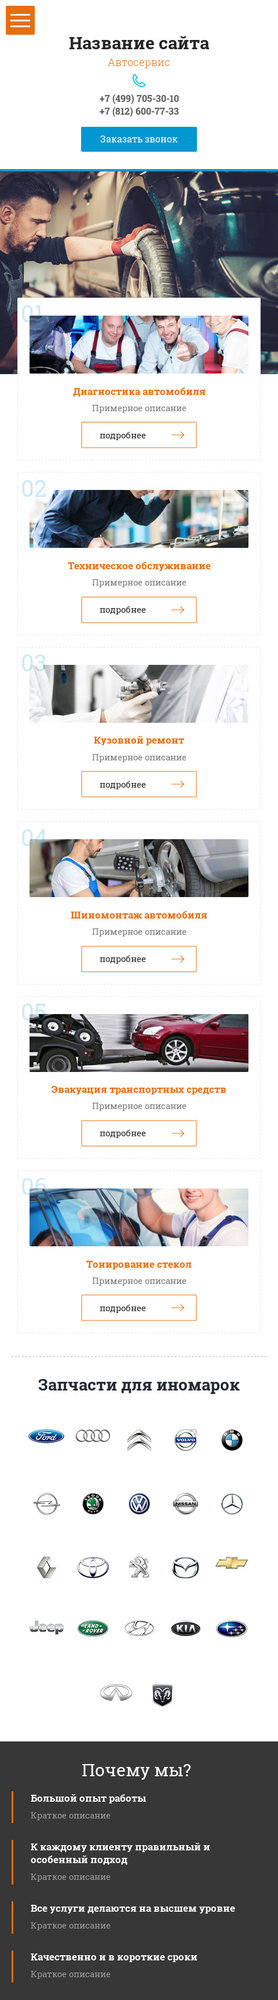 Готовый Сайт-Бизнес № 1995801 - Автосервис, ремонт транспортных средств (Мобильная версия)